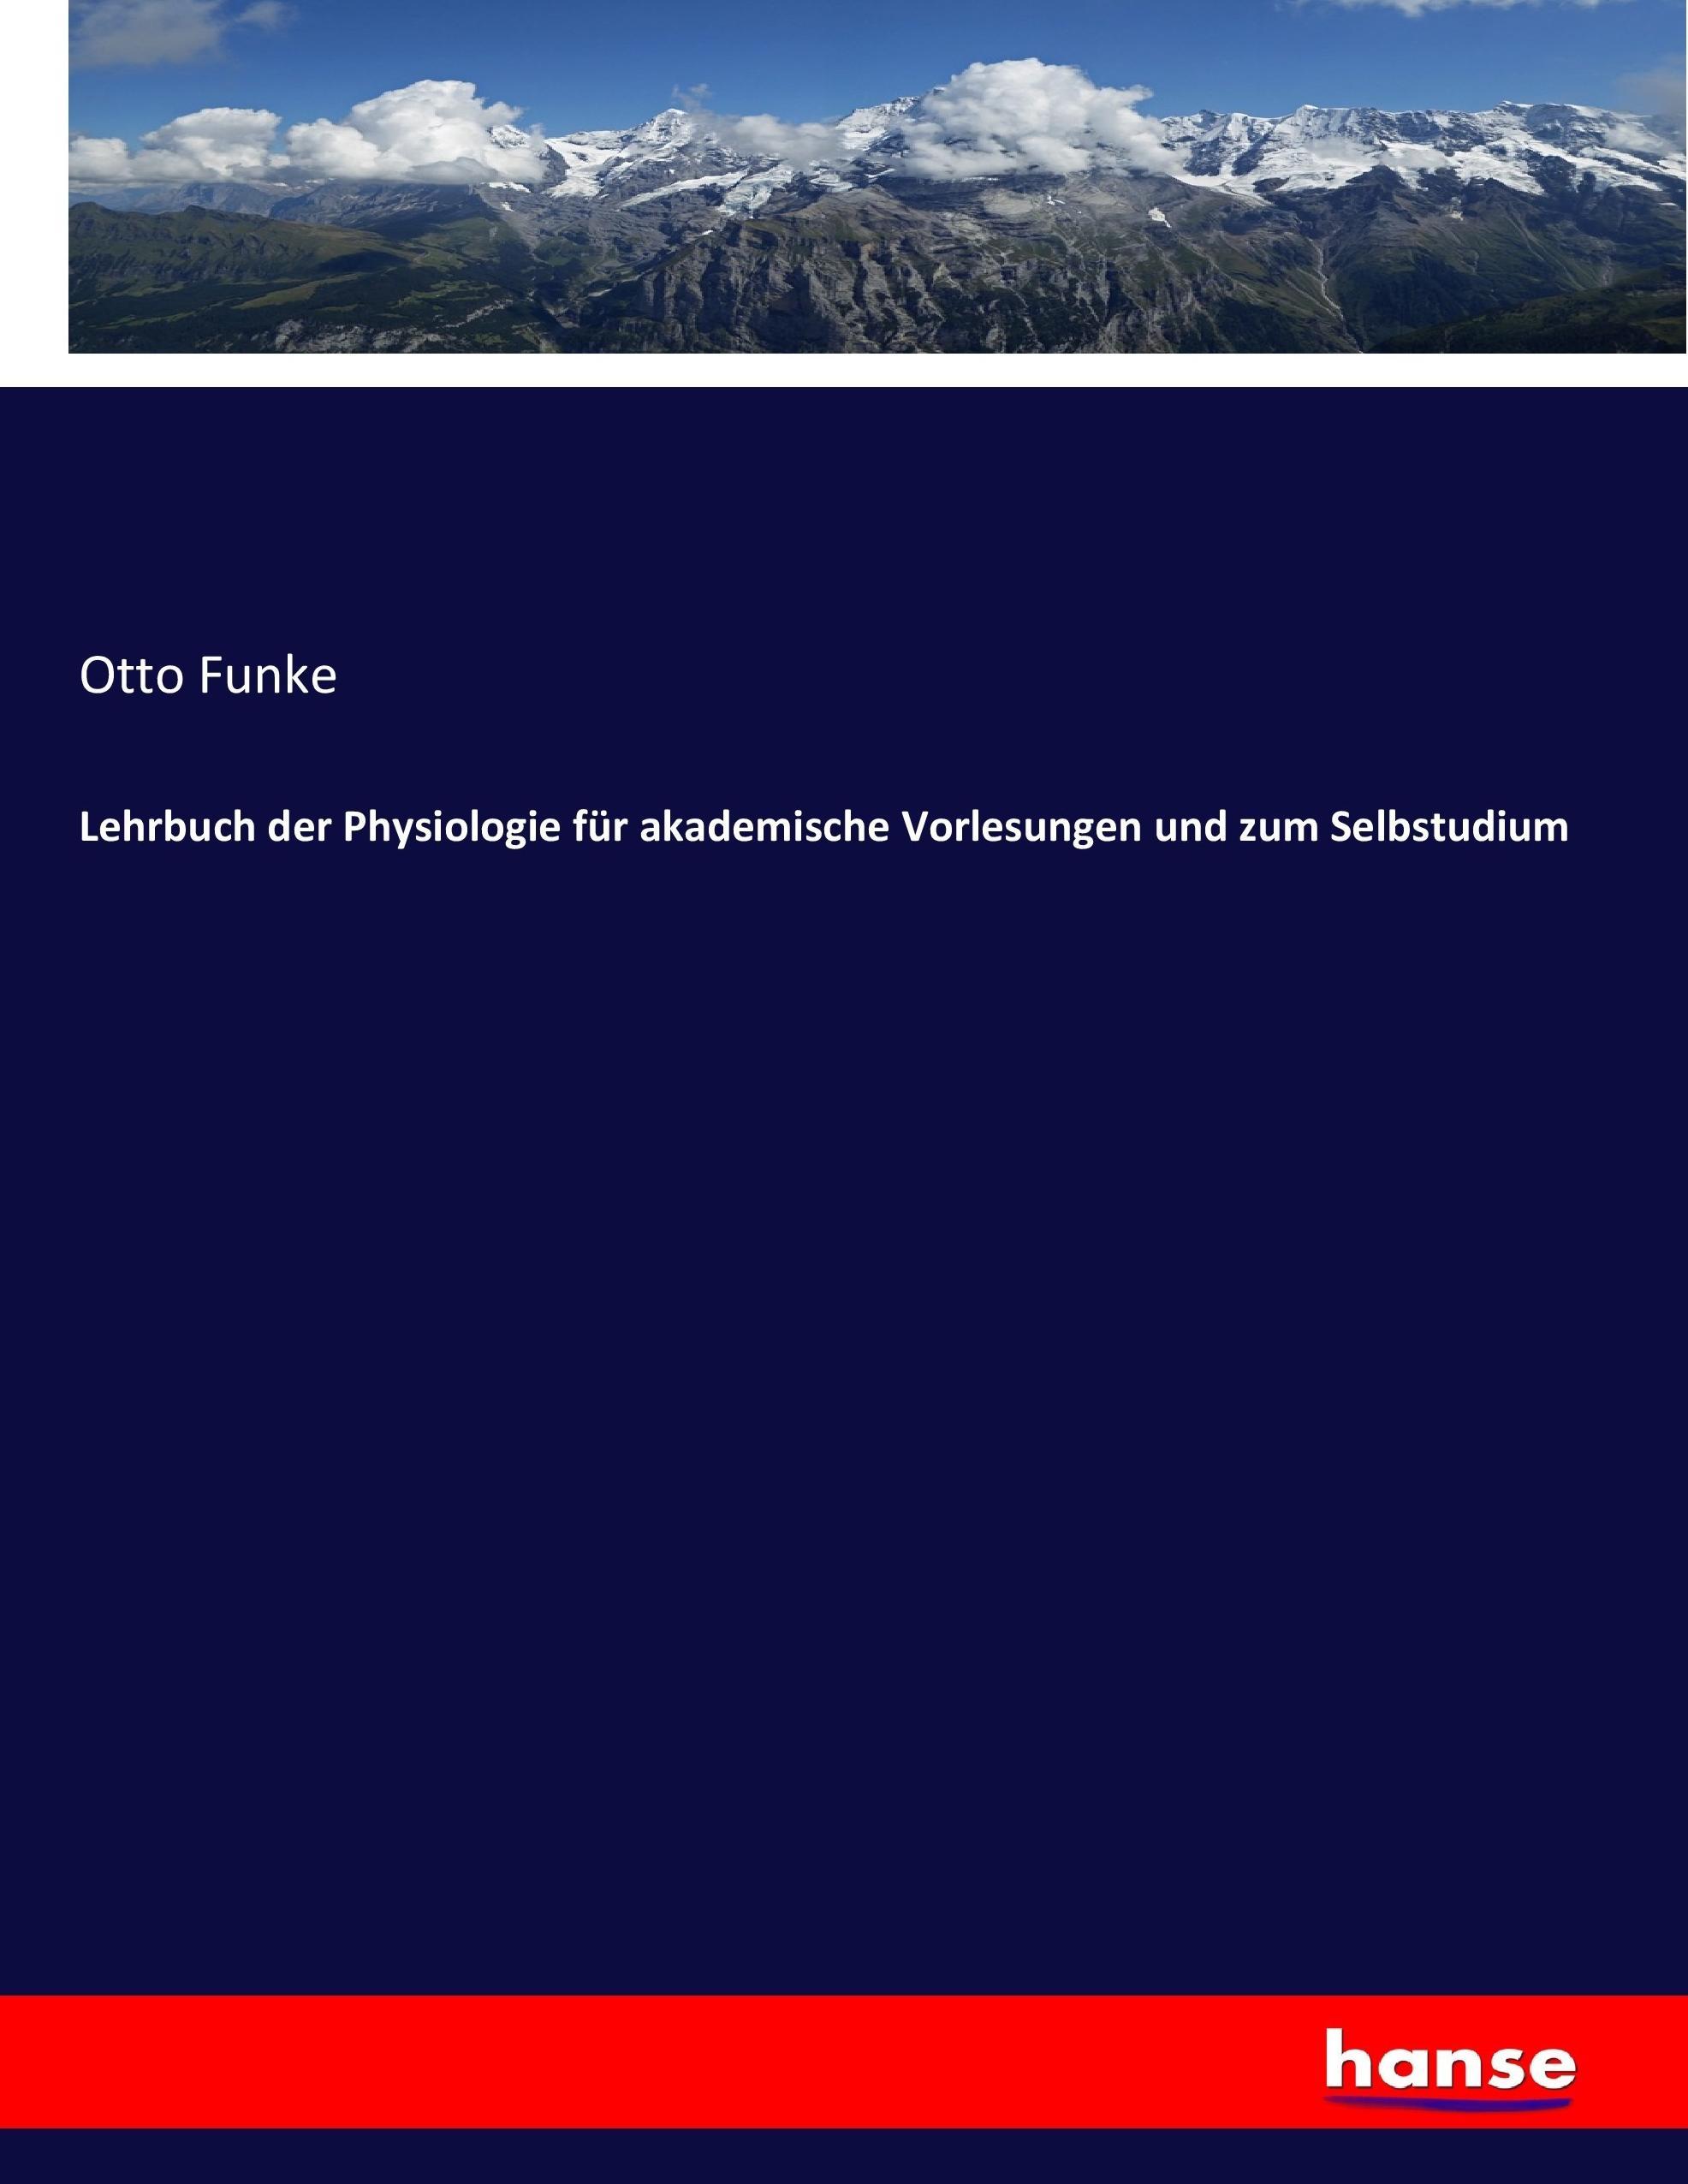 Lehrbuch der Physiologie fuer akademische Vorlesungen und zum Selbstudium - Funke, Otto